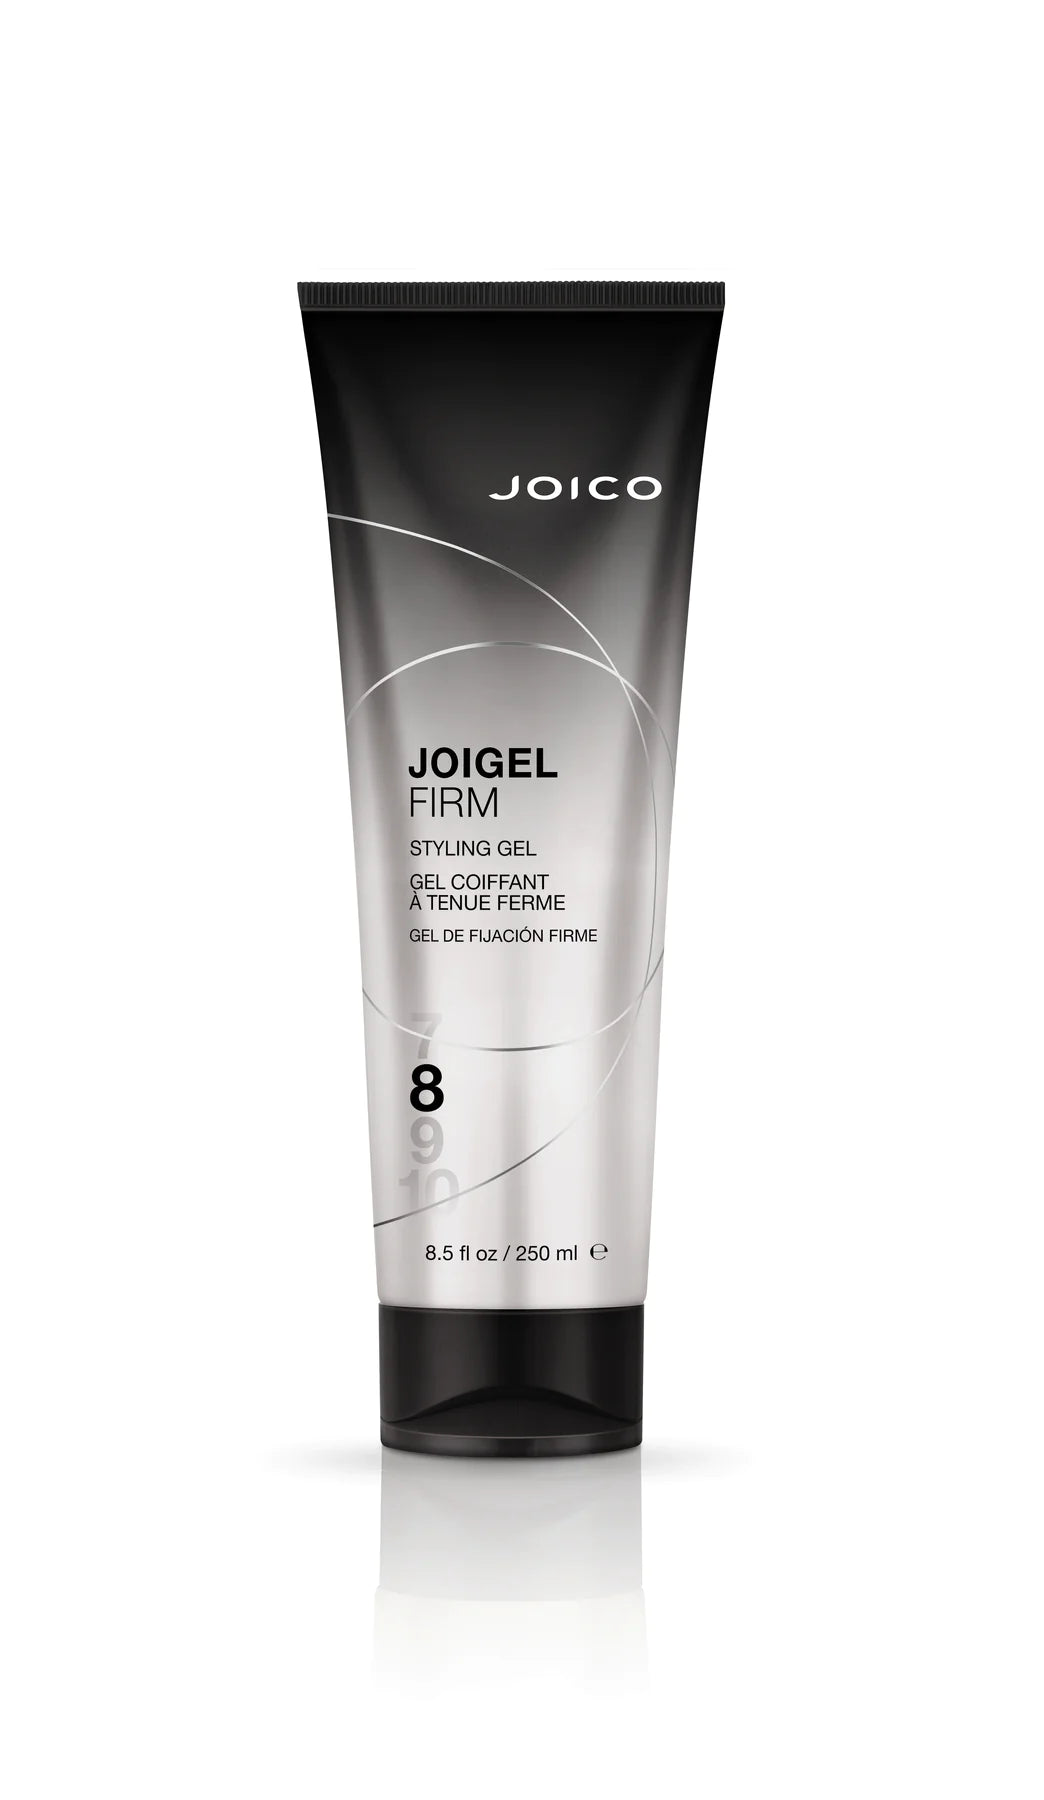 Joico Joigel Firm Styling Gel 250ml (was Power Gel)